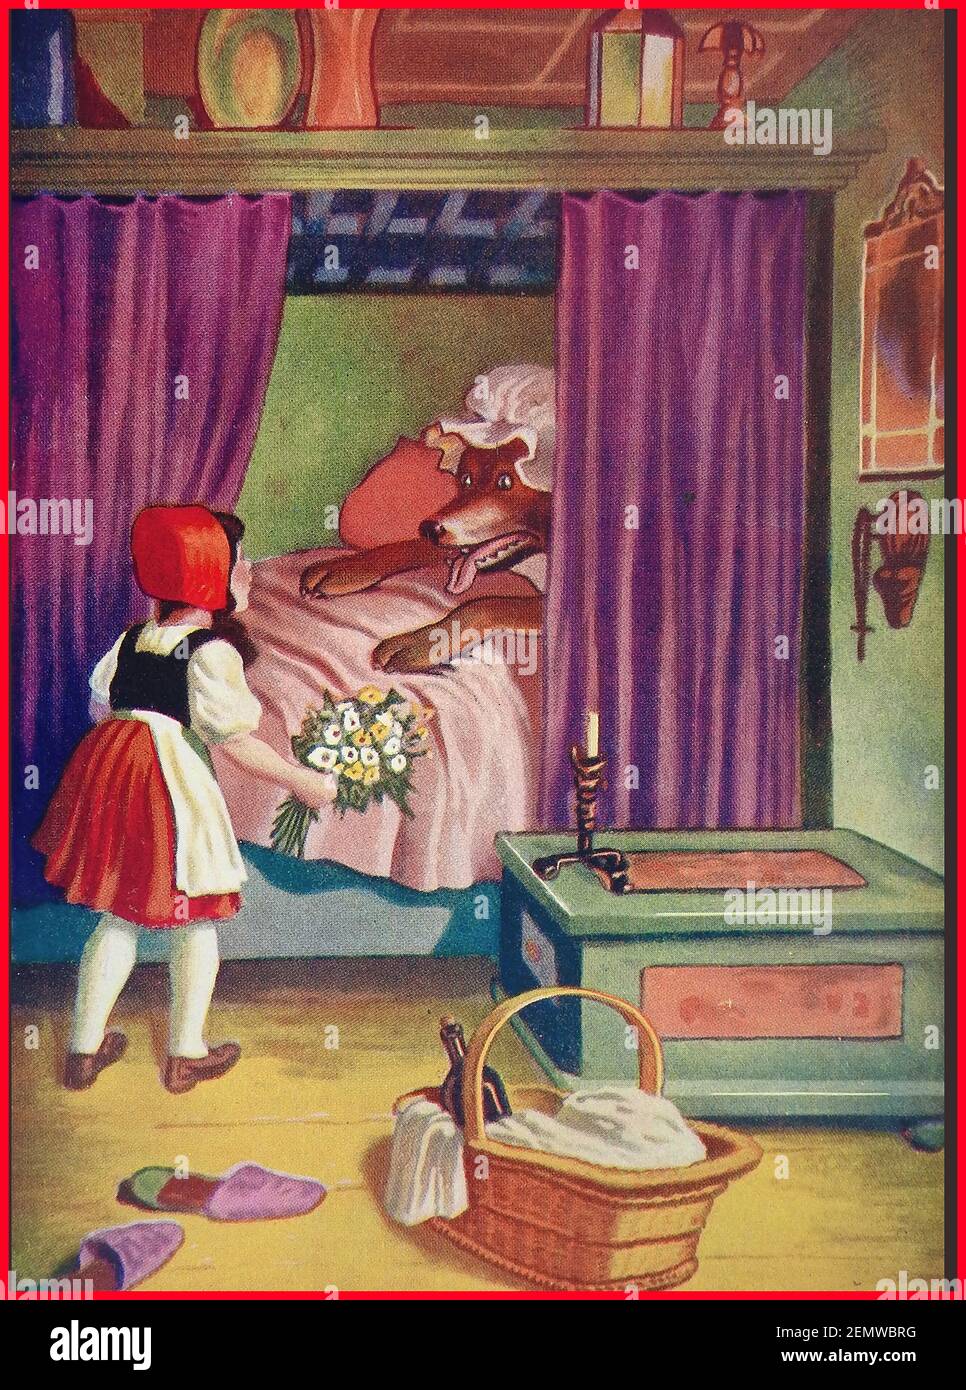 Une illustration britannique des couleurs des enfants vers les années 1940 CAGOULE ROUGE de conte de fées avec la fille en face par le carcajou qui avait mangé sa grand-mère Banque D'Images